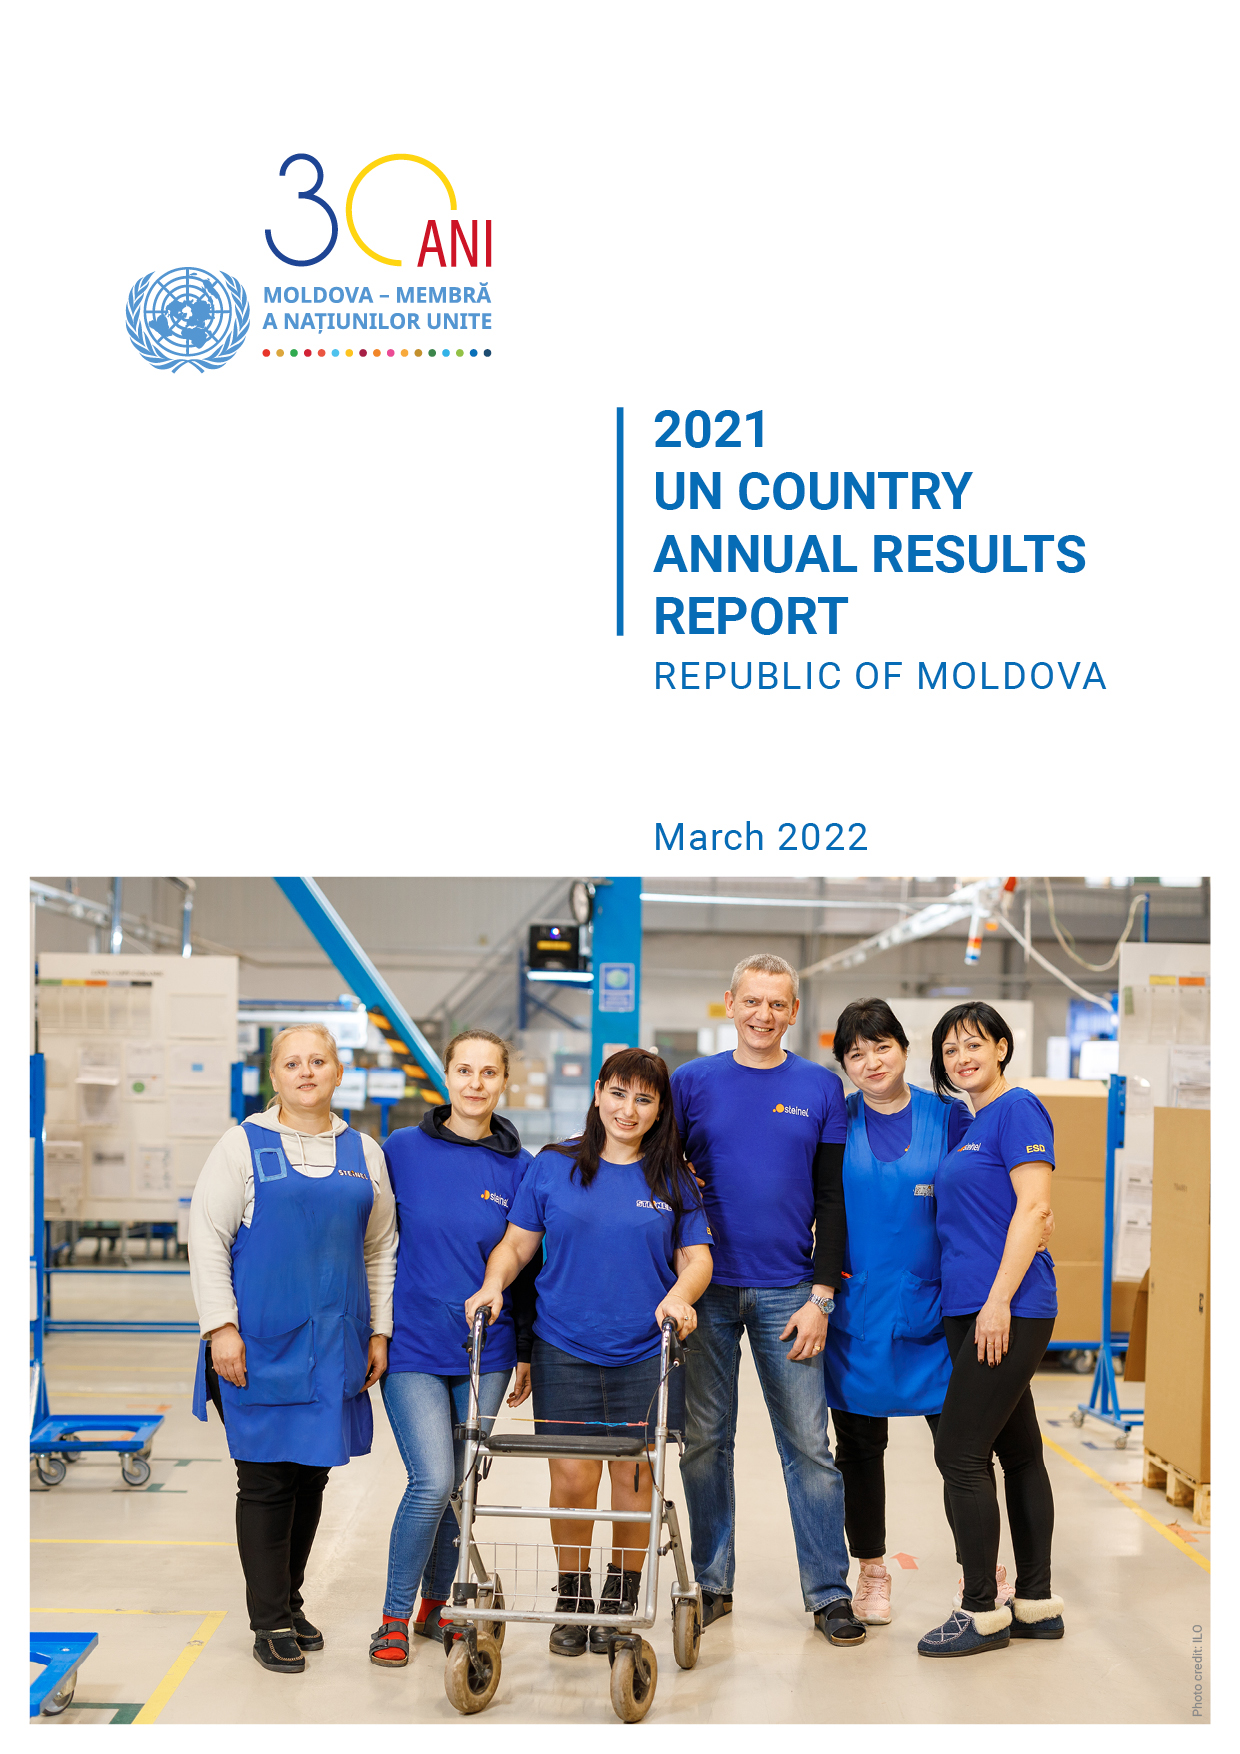 Raportul anual al Organizației Națiunilor Unite privind rezultatele țării în anul 2021, Republica Moldova